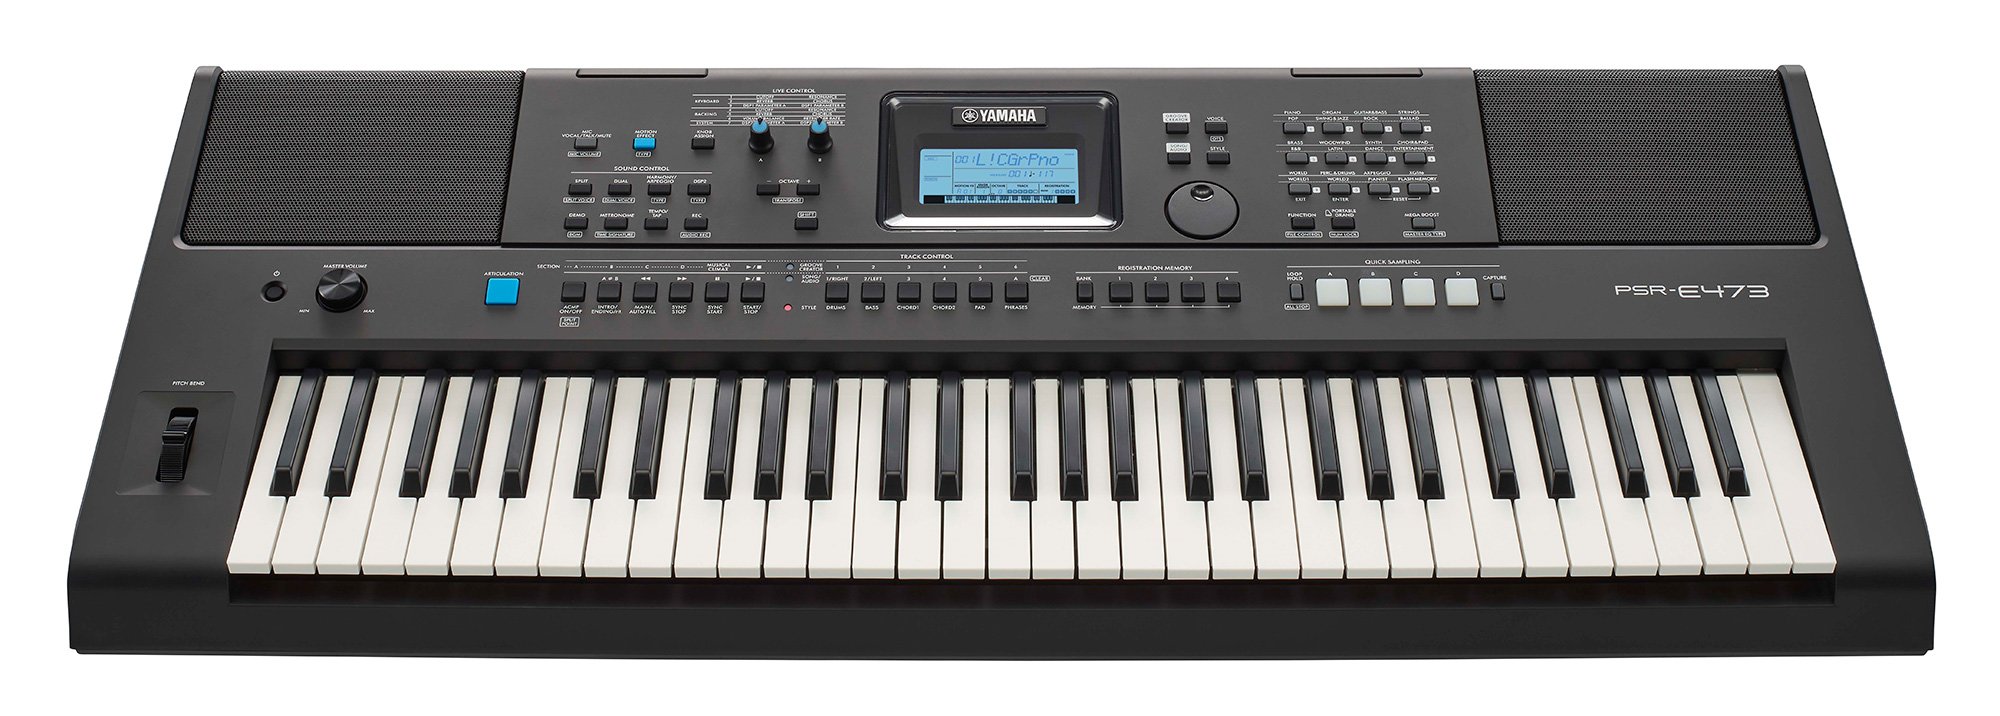 PSR-E473 Yamaha-Keyboard